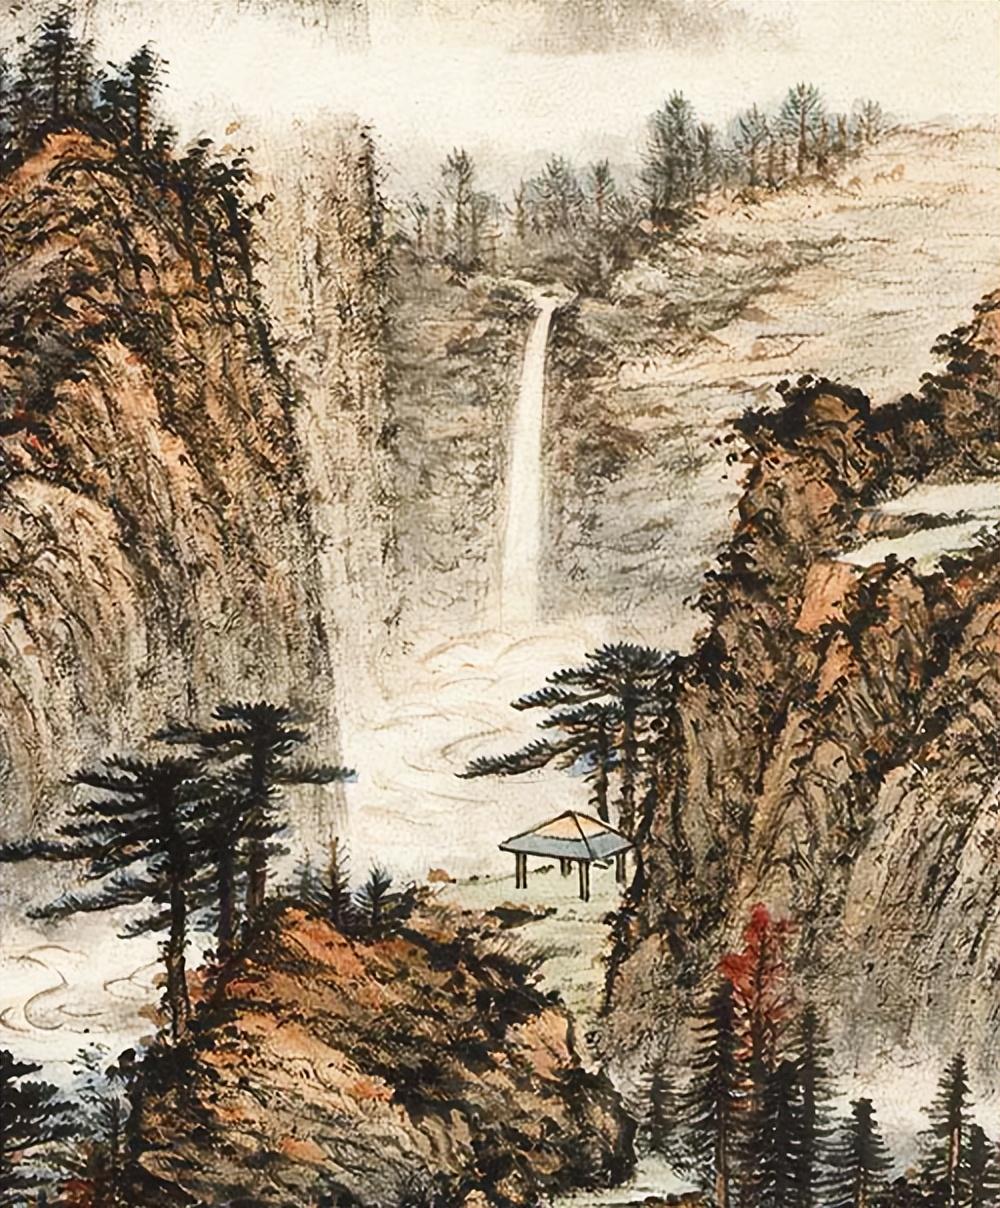 近代画家黄君璧山水画作品《灵岩落泉》高清图片欣赏